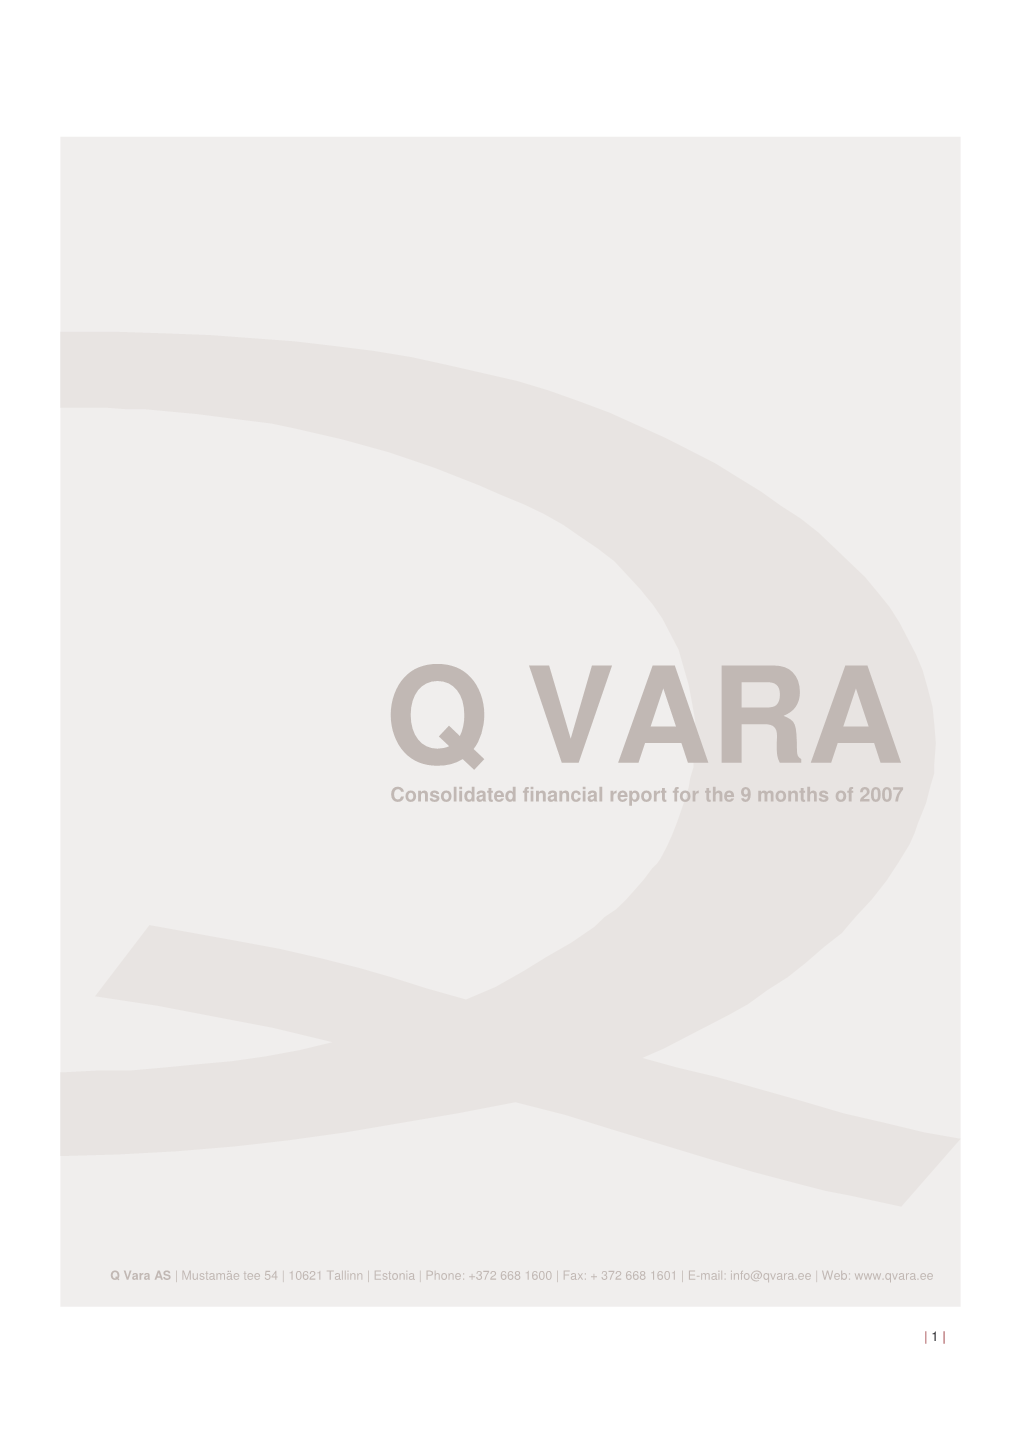 Q Vara IIQ 2007 English